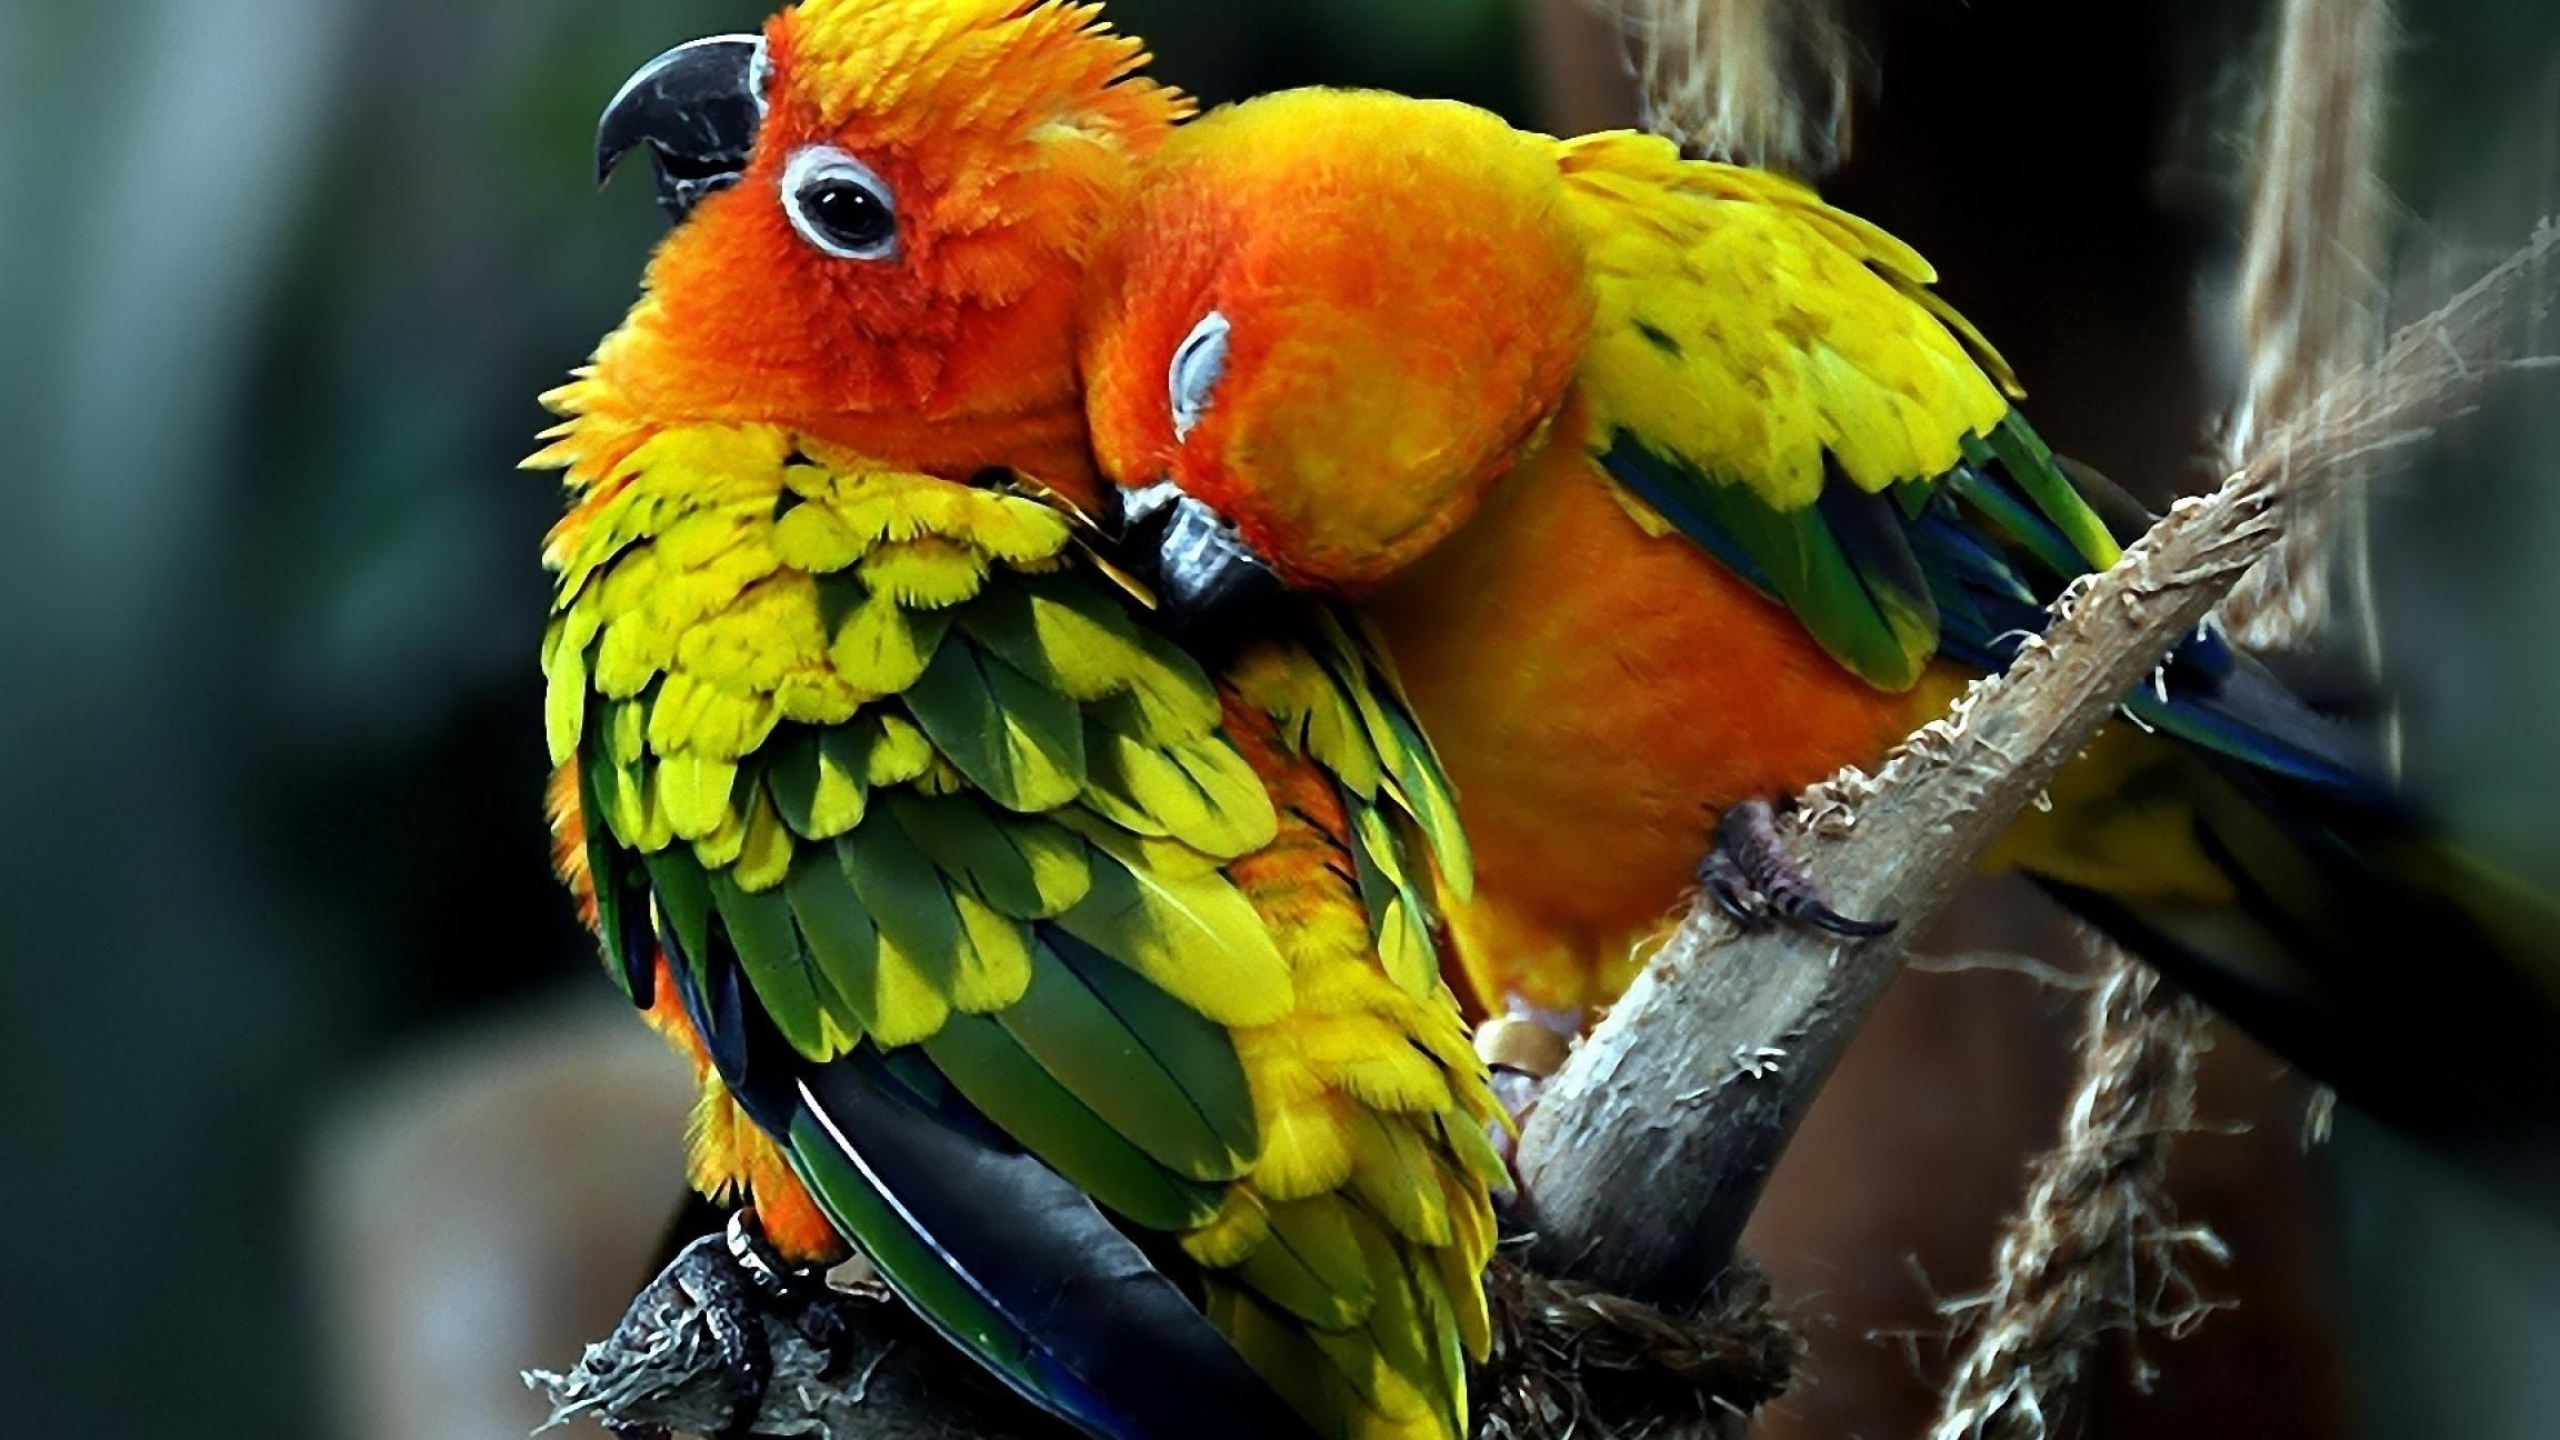 Love birds, HD wallpaper, Pet birds, Parrot, 2560x1440 HD Desktop